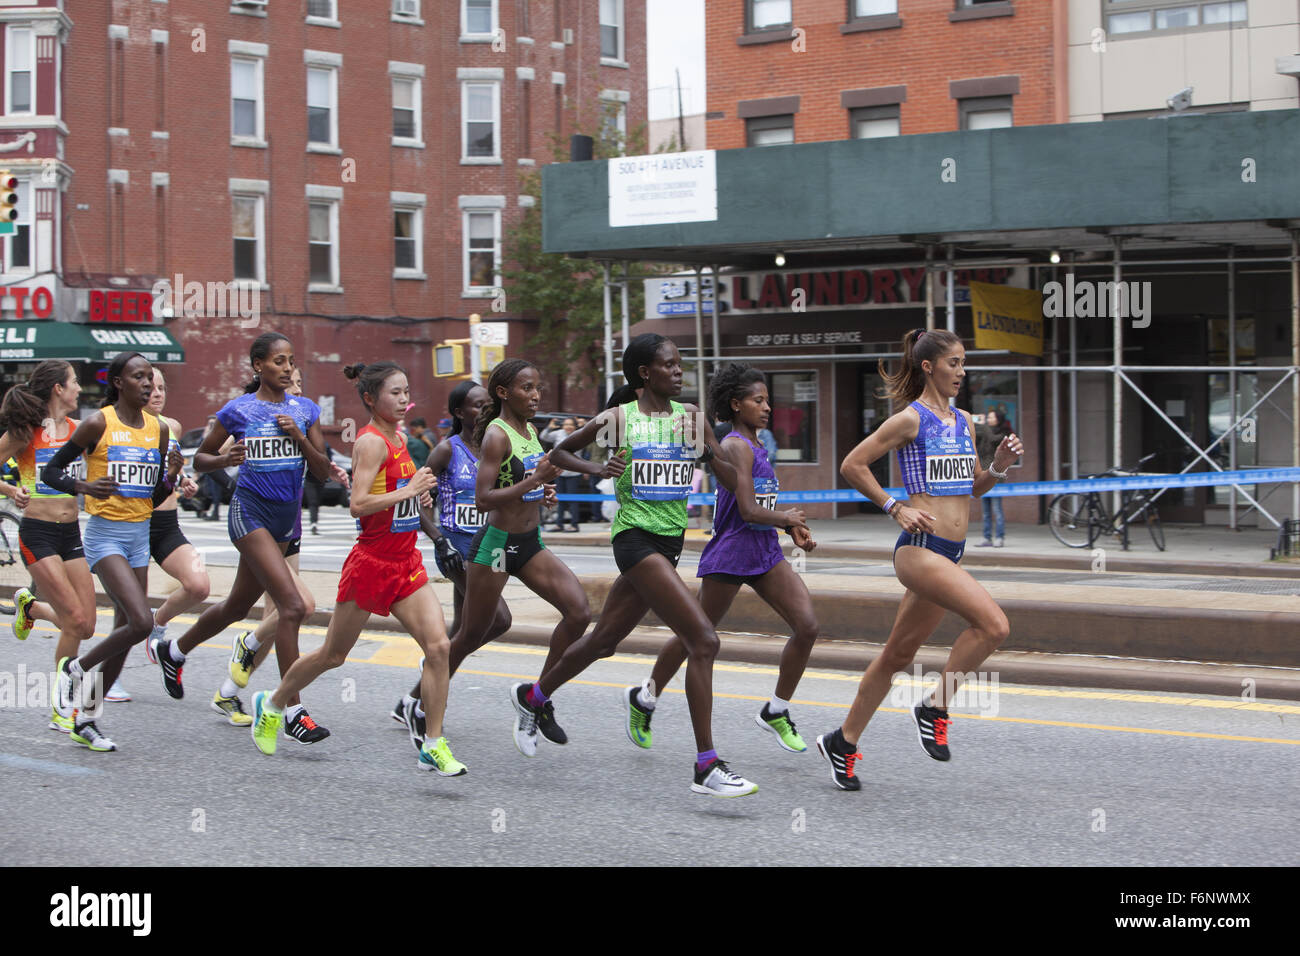 Los corredores frontal en la división de mujeres venir abajo 4th Avenue en Park Slope Brooklyn durante el Maratón de Nueva York de 2015. Foto de stock